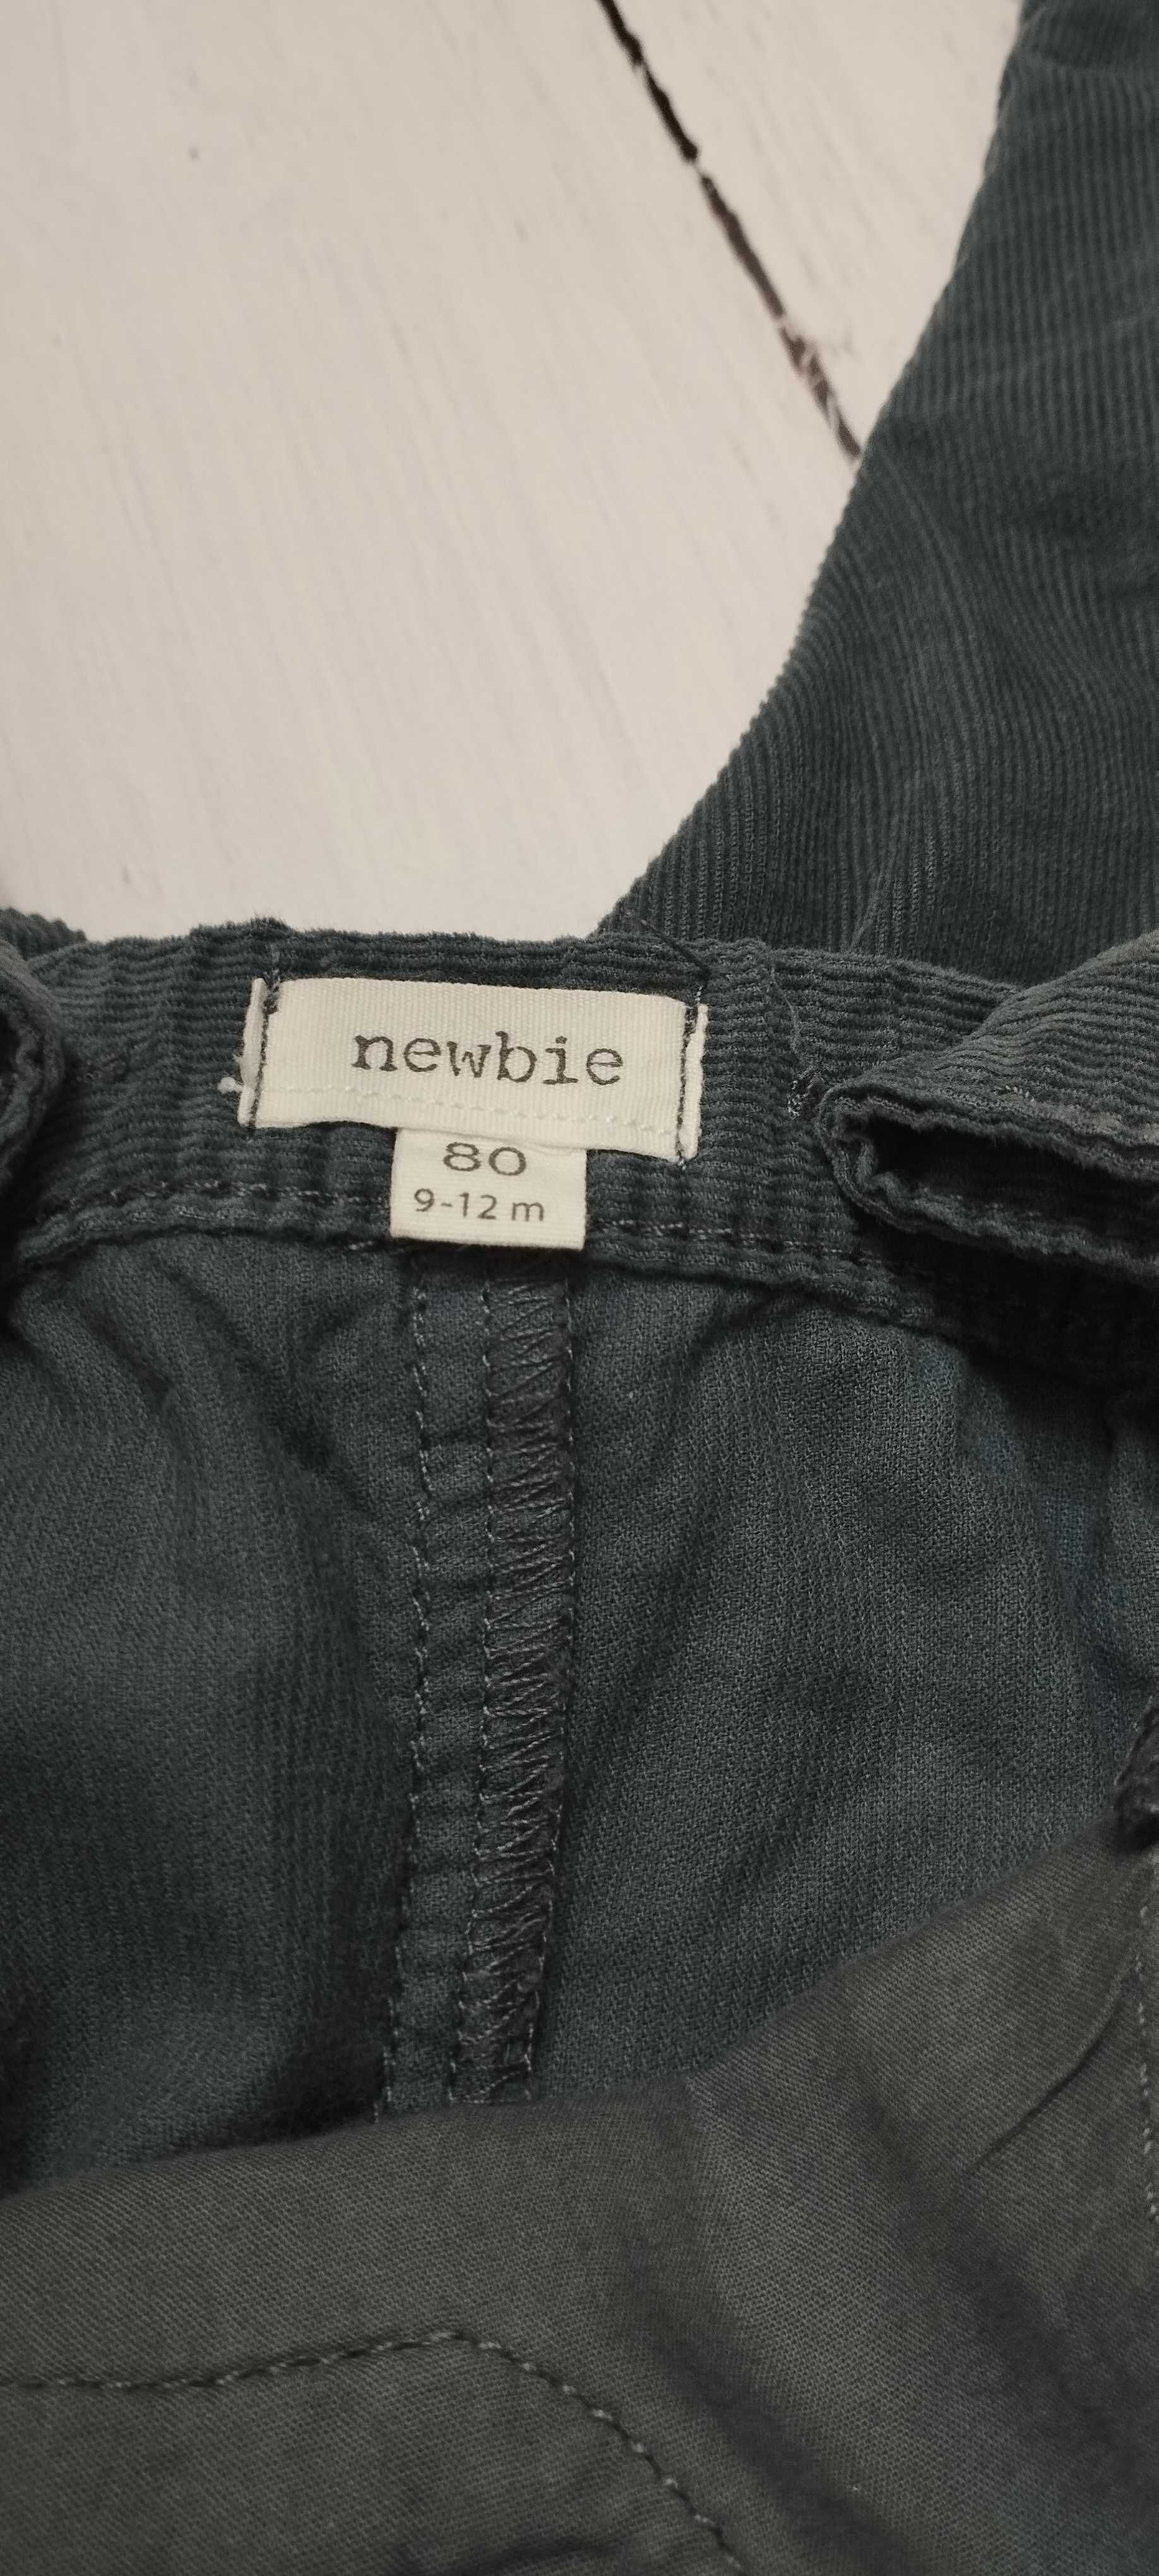 Spodnie na szelki chłopięce r.80cm Newbie